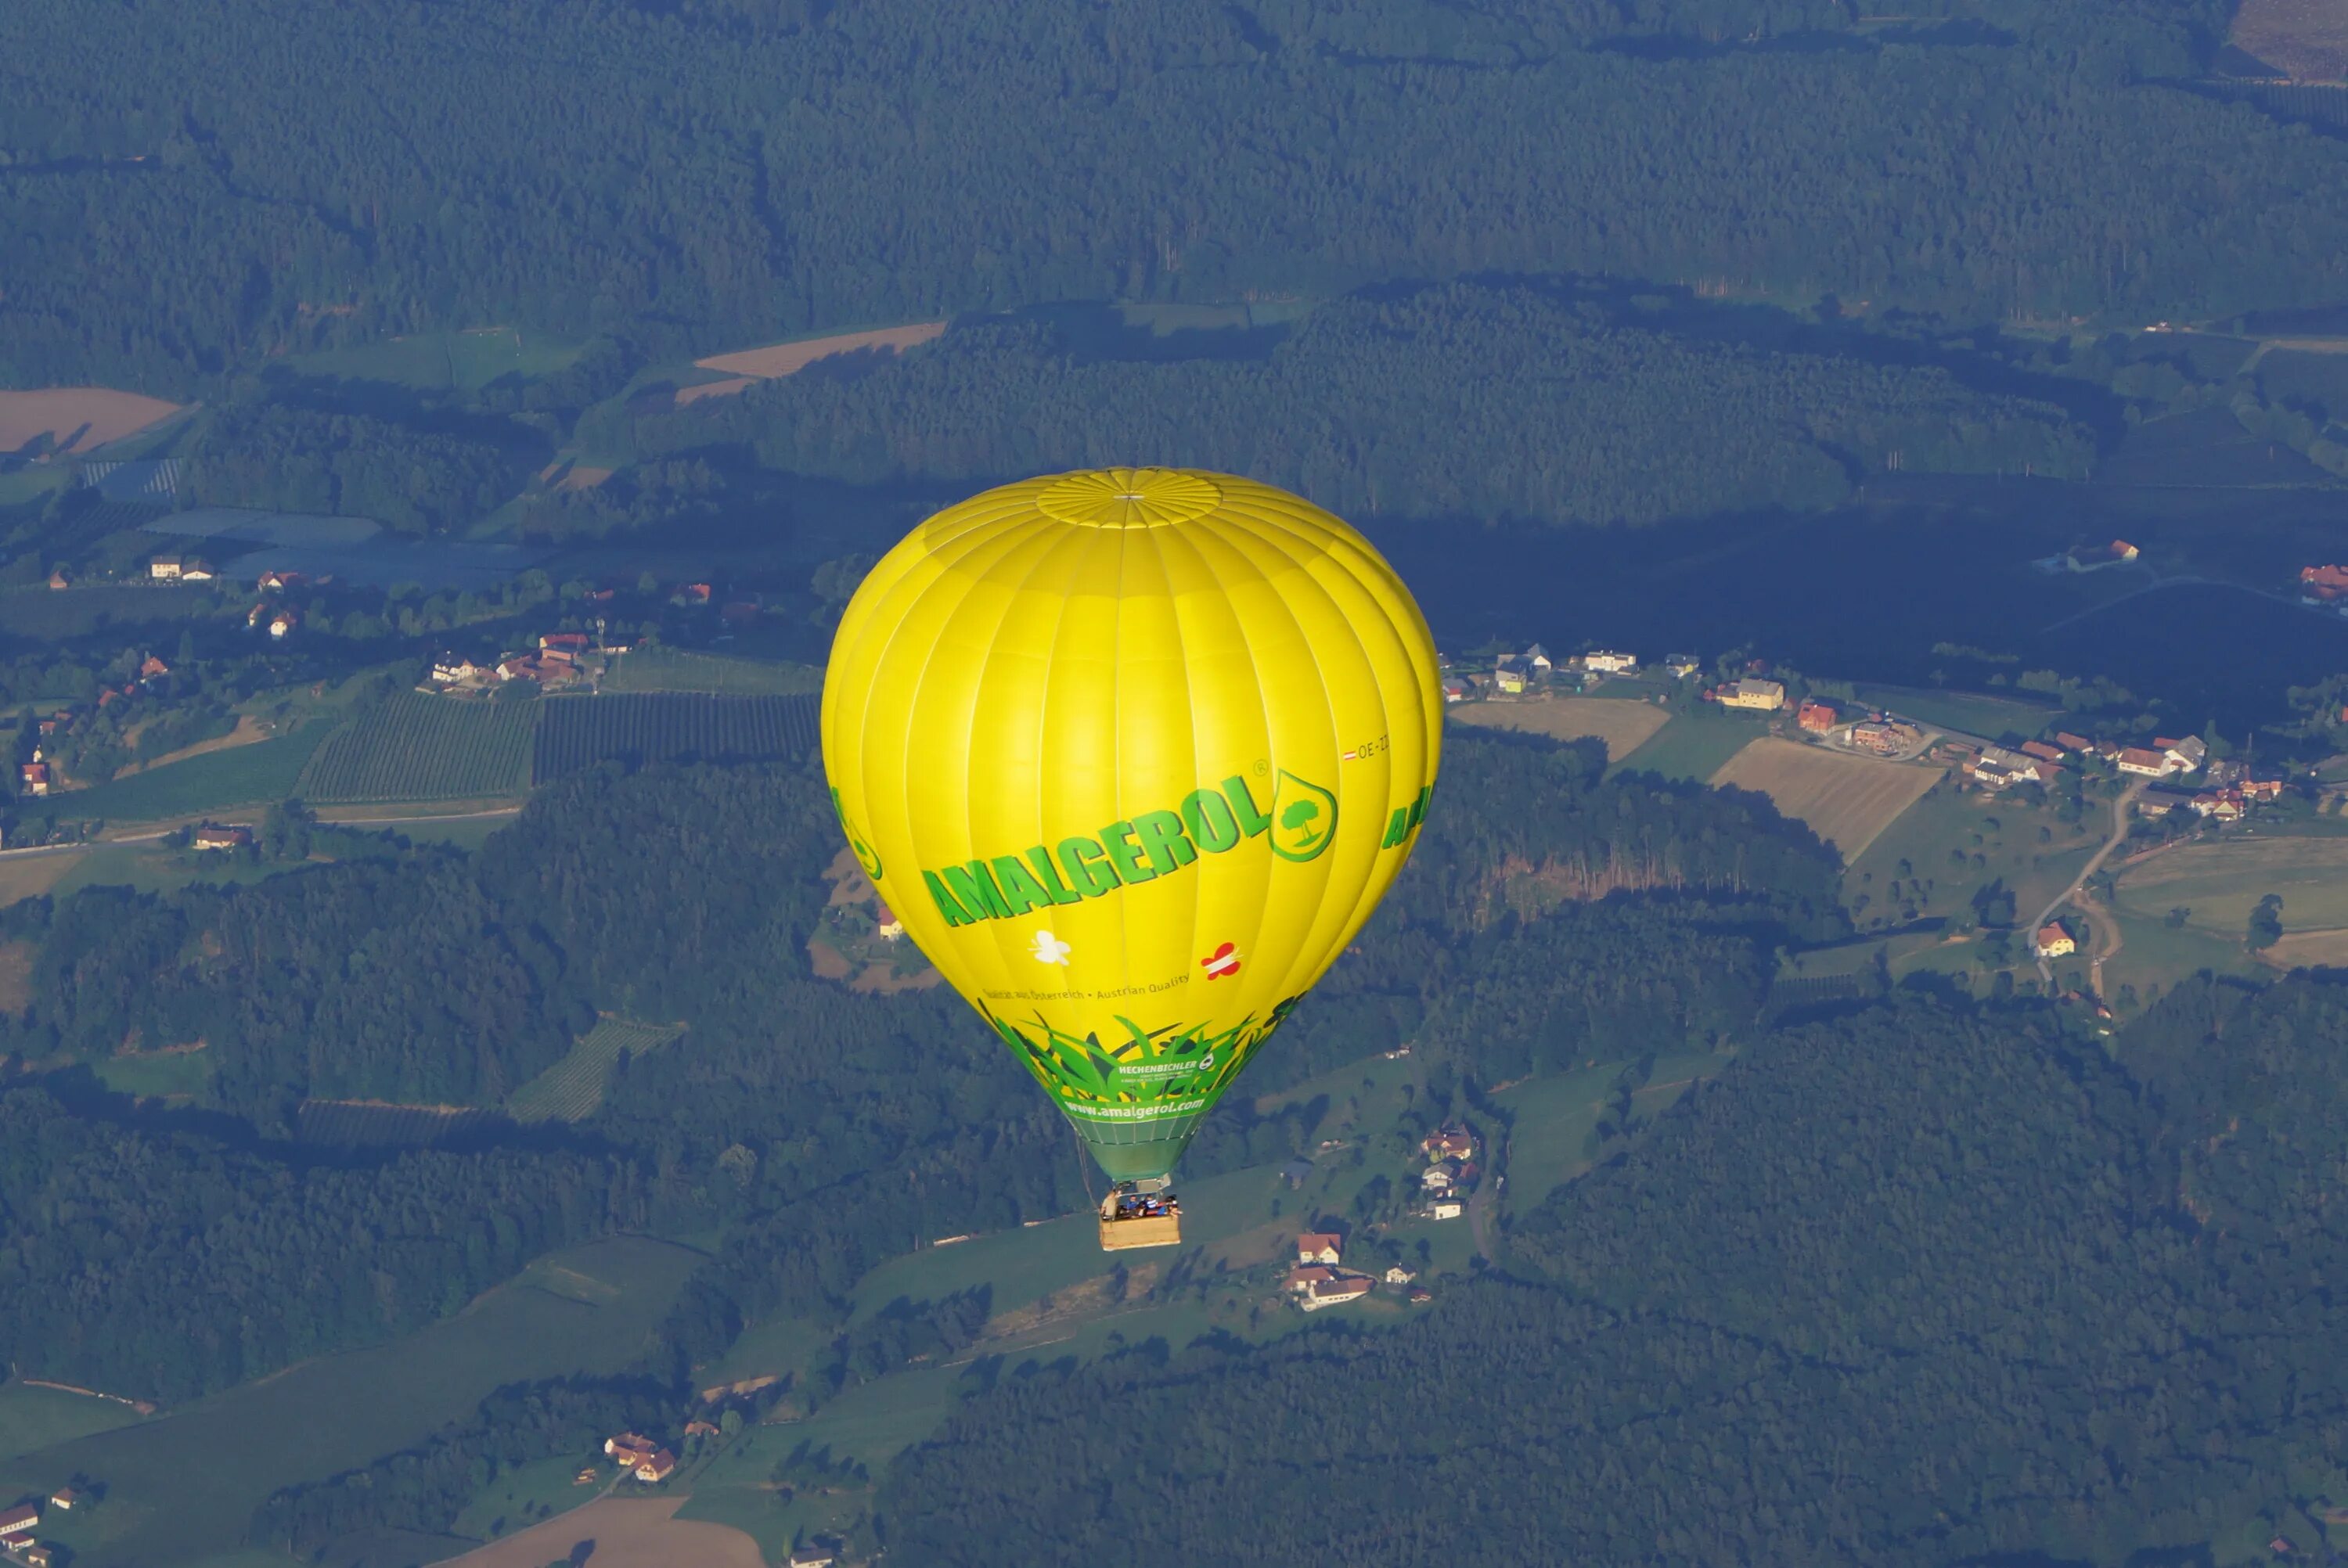 Воздушный шар неуправляемый аэростат. Вид с воздушного шара. Воздушные шары аэростаты. Воздушный шар вид сверху.